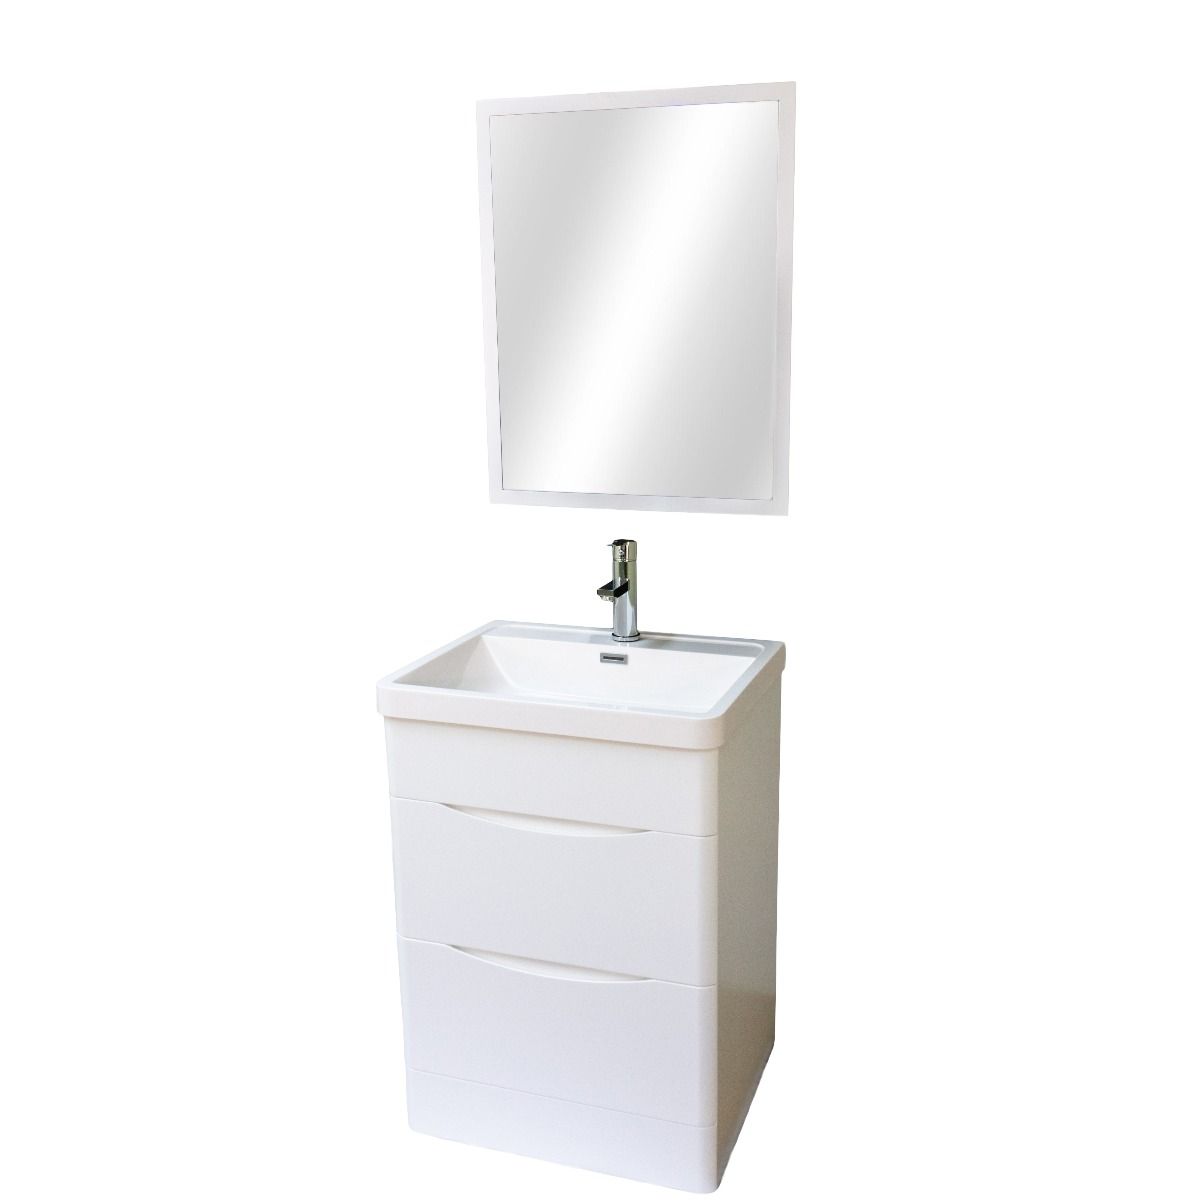 Stockholm 24" W x 18" D x 33" H Bathroom Vanity in White with Ceramic Vanity Top - Dreamwerks